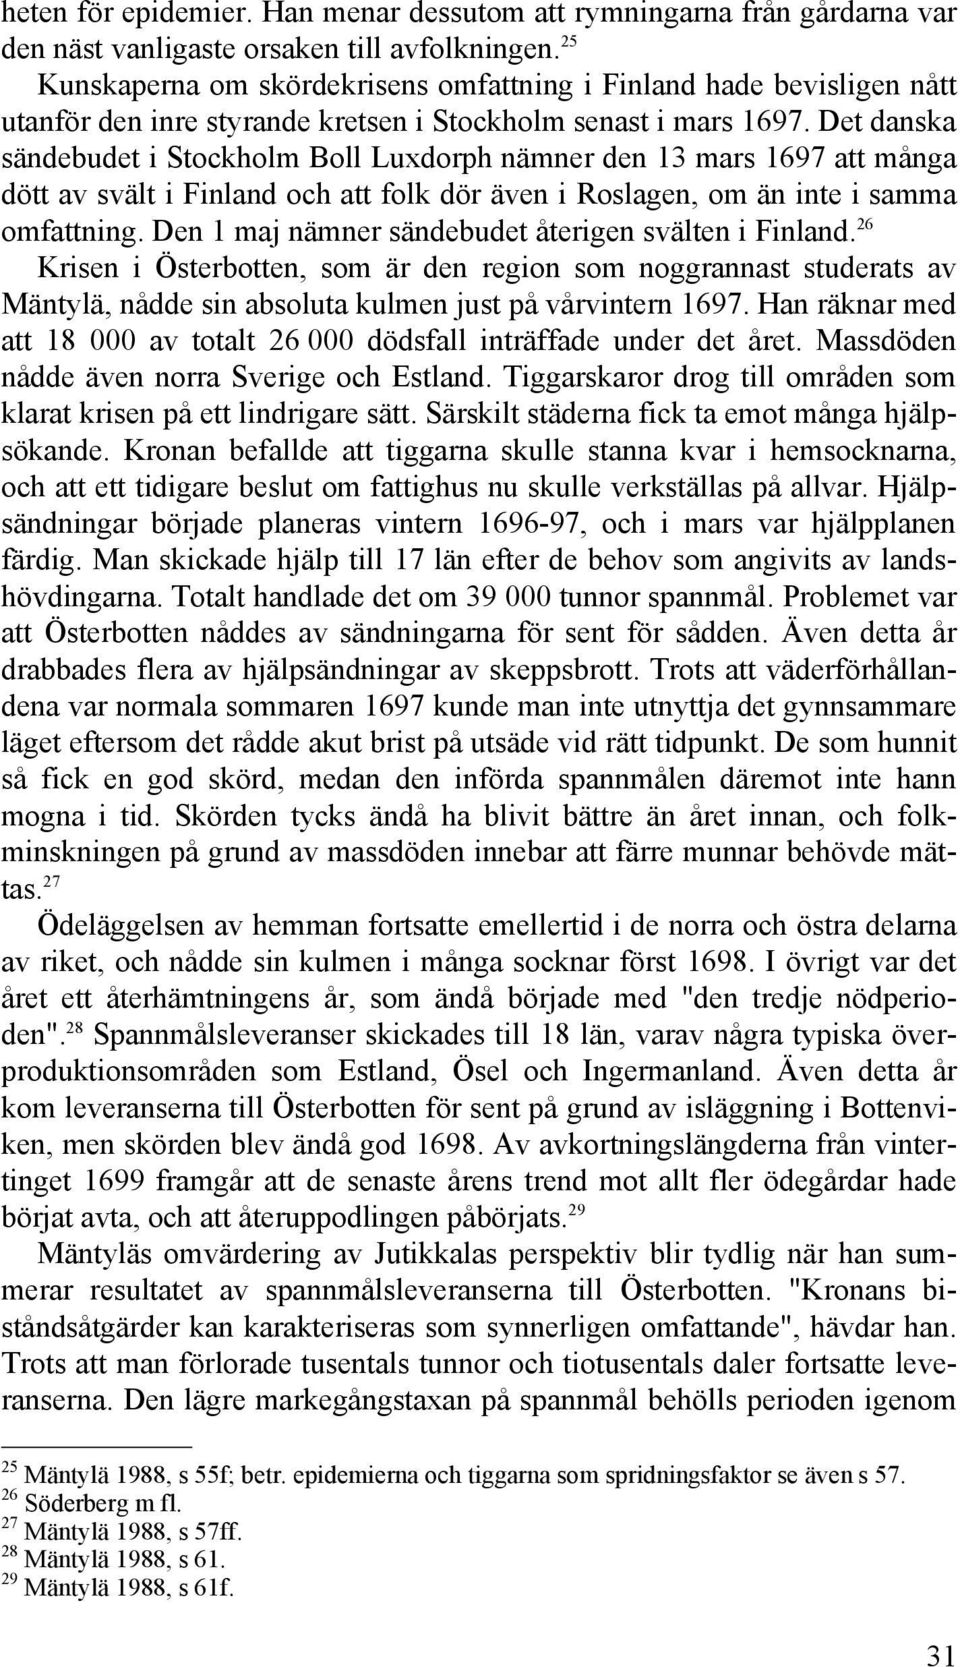 Det danska sändebudet i Stockholm Boll Luxdorph nämner den 13 mars 1697 att många dött av svält i Finland och att folk dör även i Roslagen, om än inte i samma omfattning.